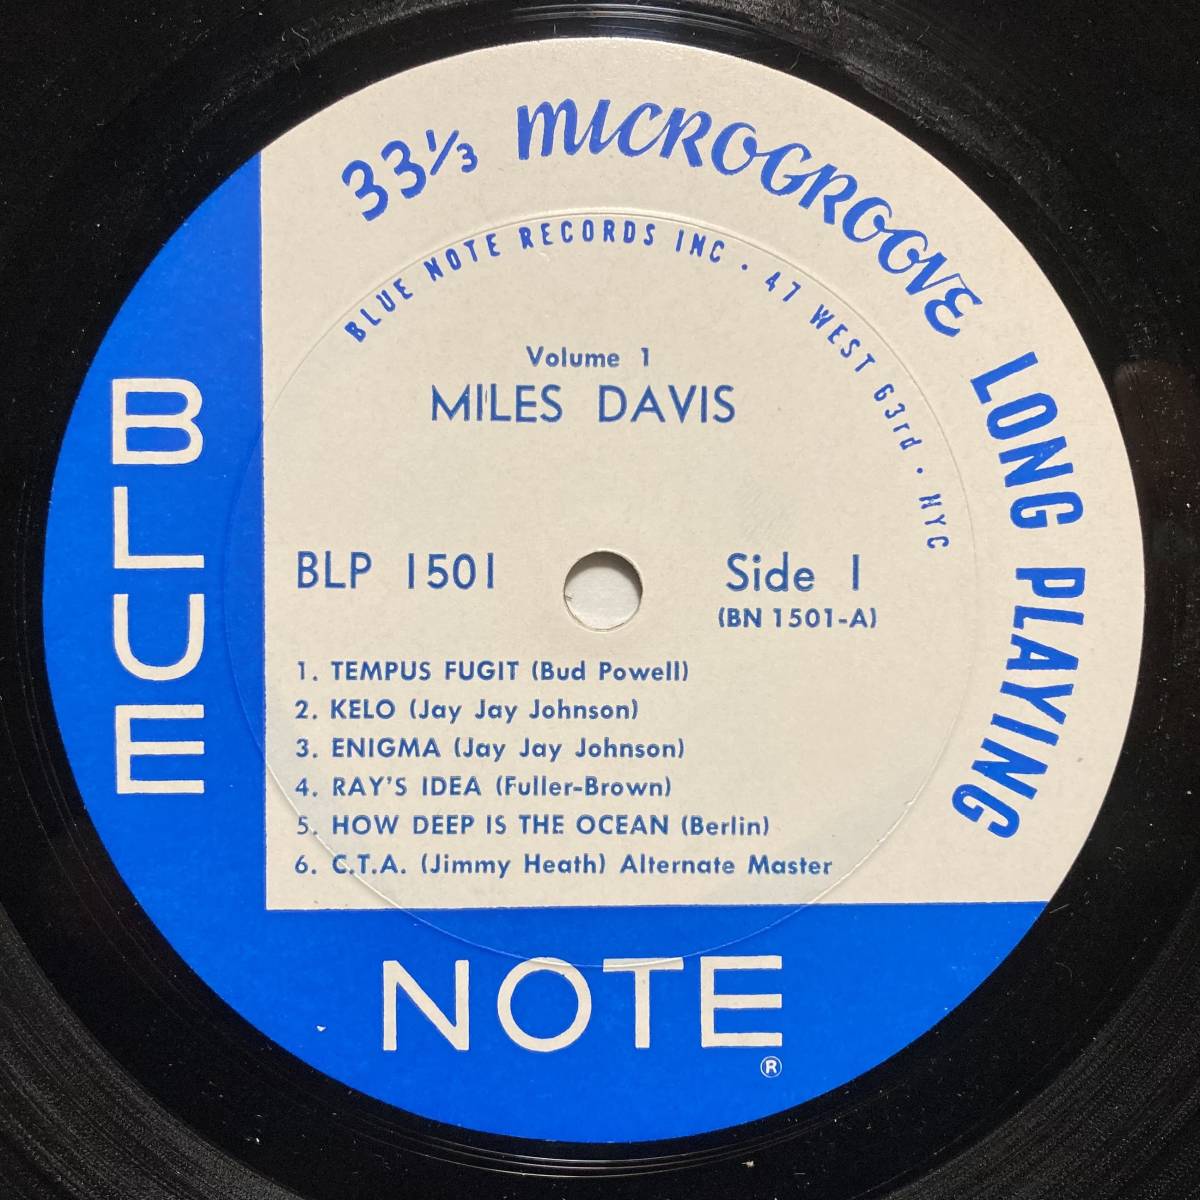 総合ランキング1位 Miles Davis Volume 1 Ble Note Blp1501 Rvg Ear 耳 P 47west 63rd Nyc Mono マイルス デイビス デービスus盤モノラル 正規取扱店 Spswiniary Slubice Org Pl